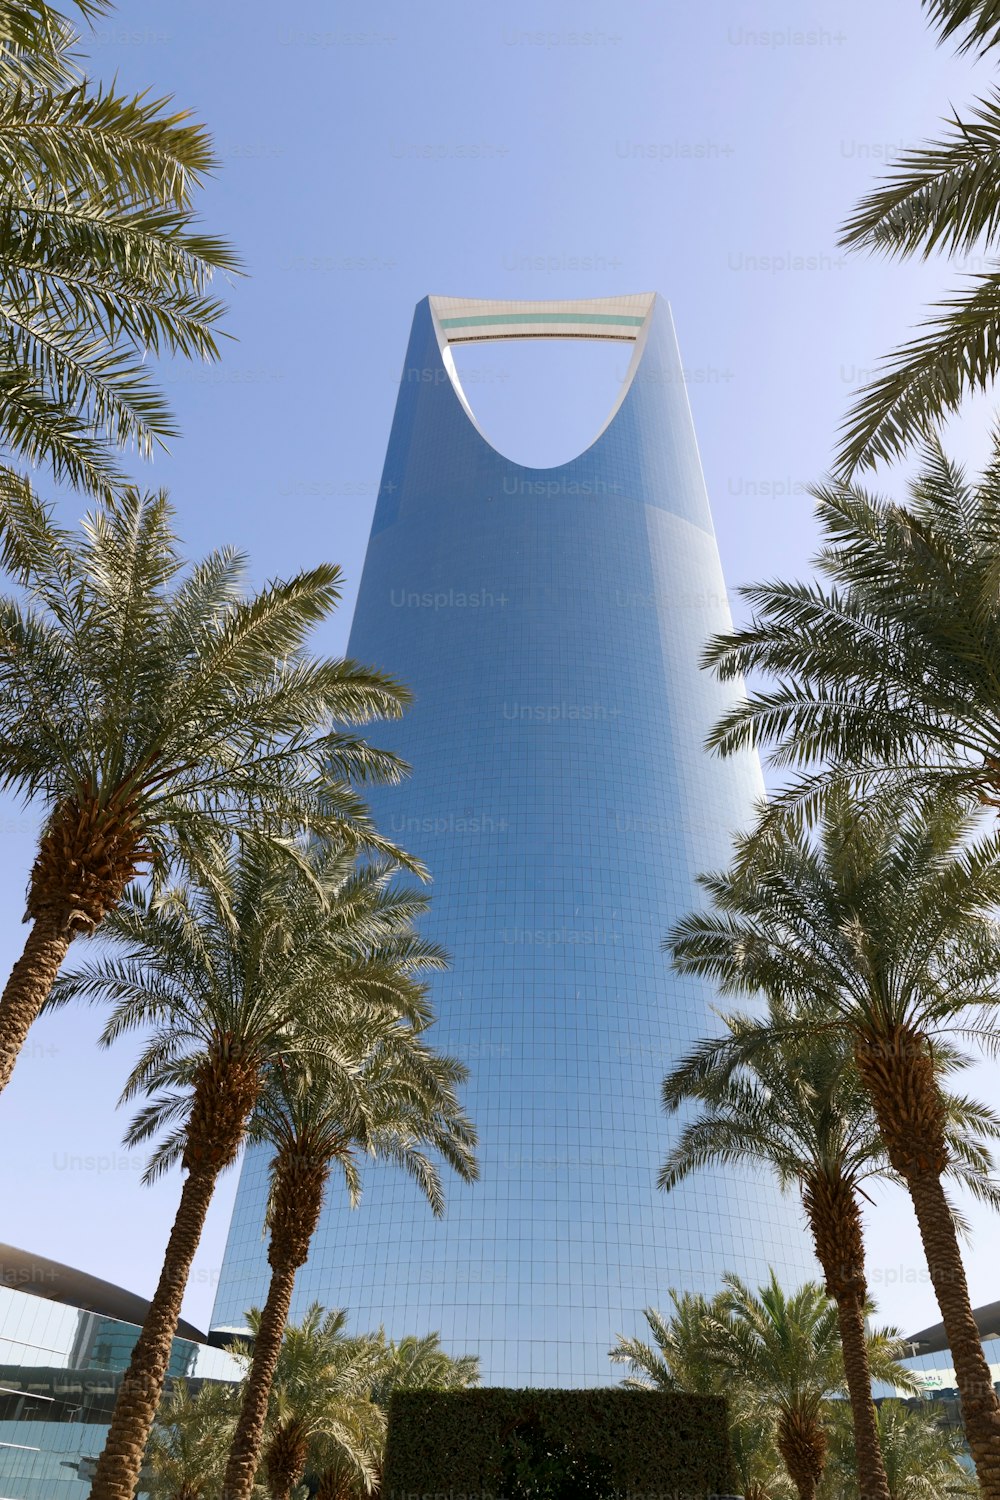 Kingdom Tower in Riad, Saudi-Arabien. Der Kingdom Tower ist ein Geschäfts- und Kongresszentrum, ein Einkaufszentrum und eines der wichtigsten Wahrzeichen der Stadt Riad